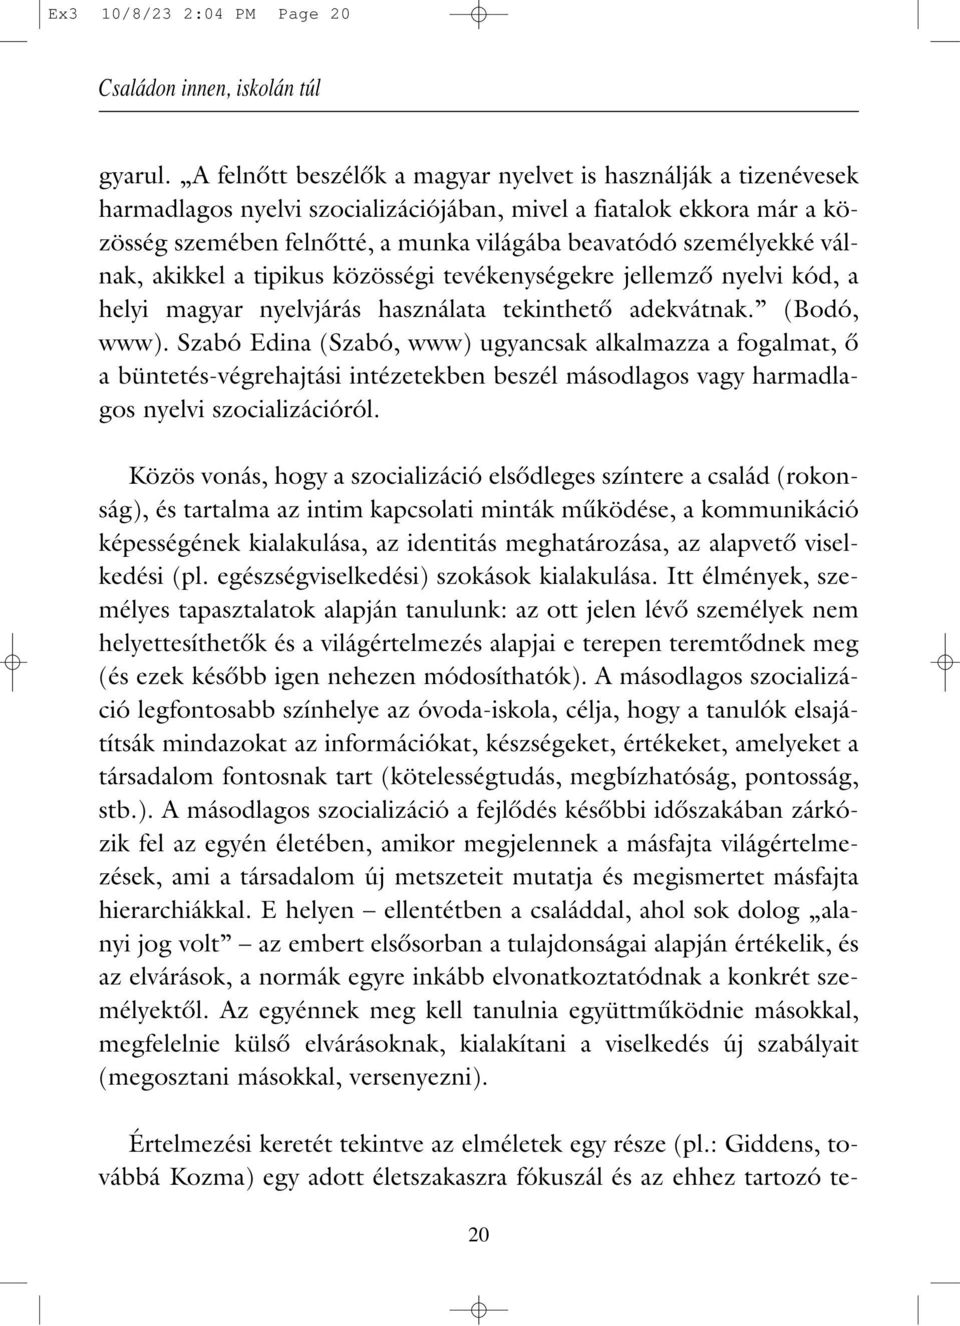 válnak, akikkel a tipikus közösségi tevékenységekre jellemzô nyelvi kód, a helyi magyar nyelvjárás használata tekinthetô adekvátnak. (Bodó, www).